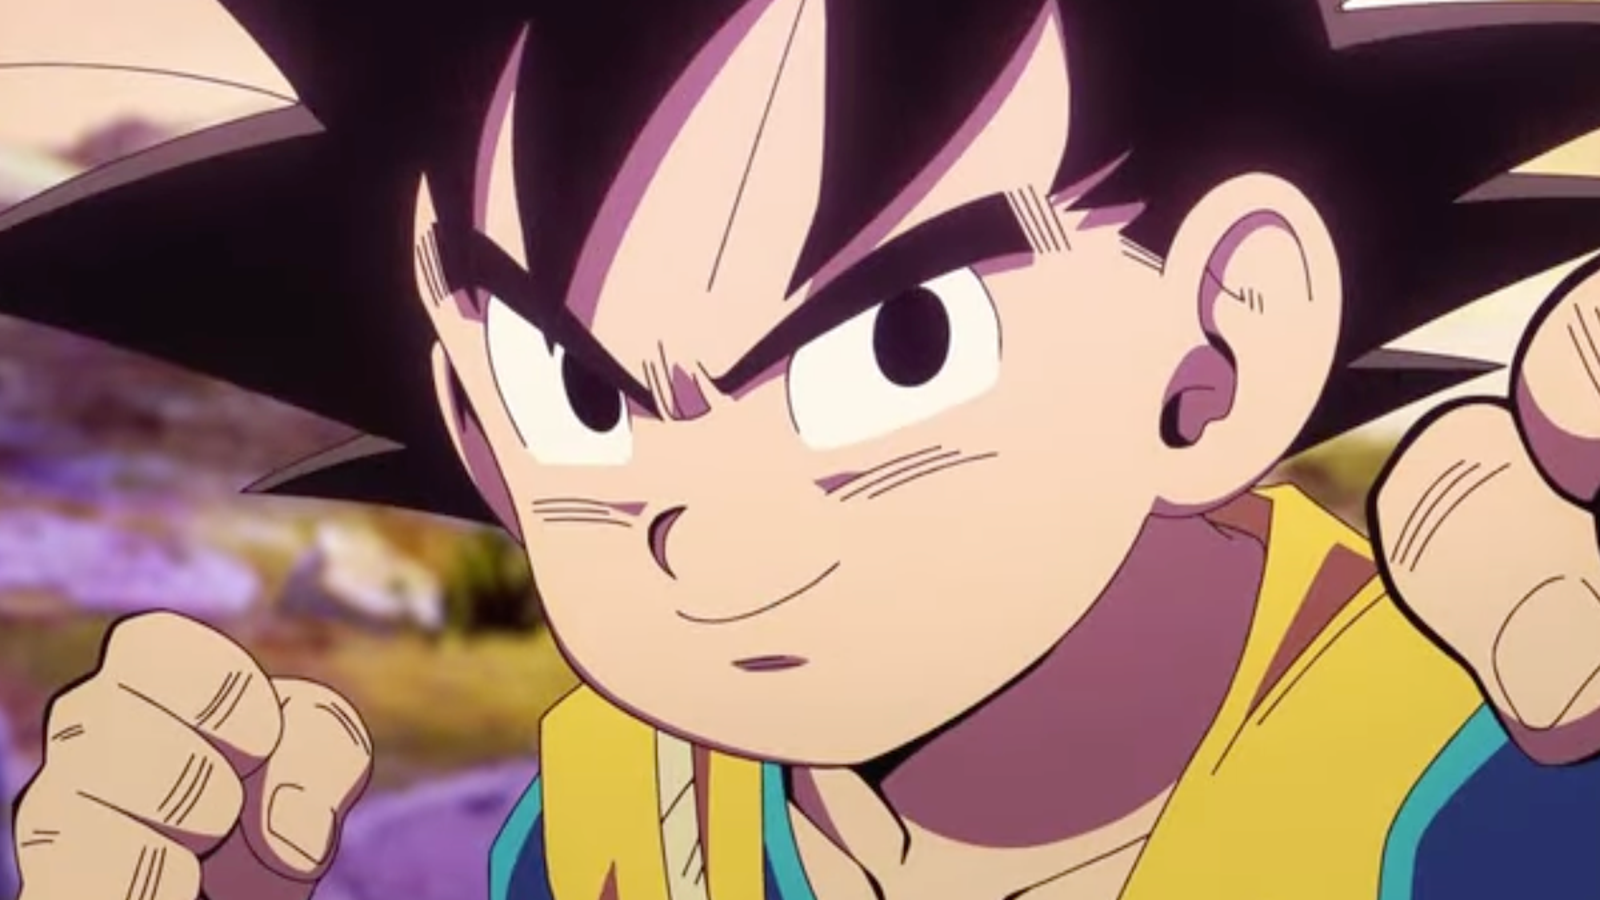 Dragon Ball Super Hero Anime Japanese comic Manga Anime Goku